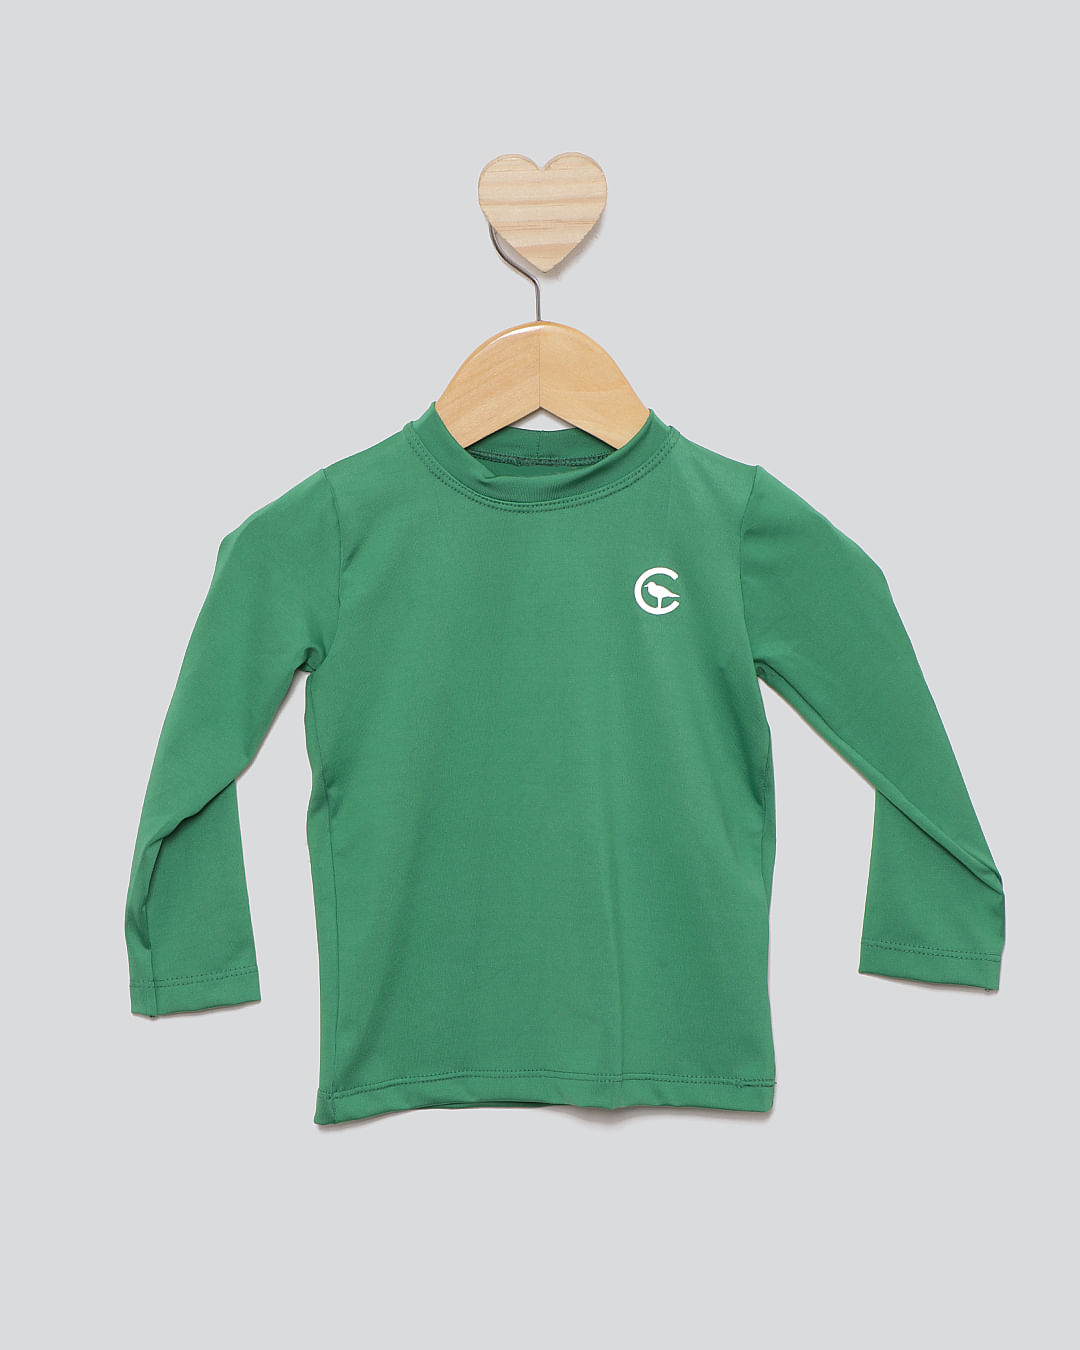 Camiseta-Bbo-Ml-Uv-Verde-253021---Verde-Escuro